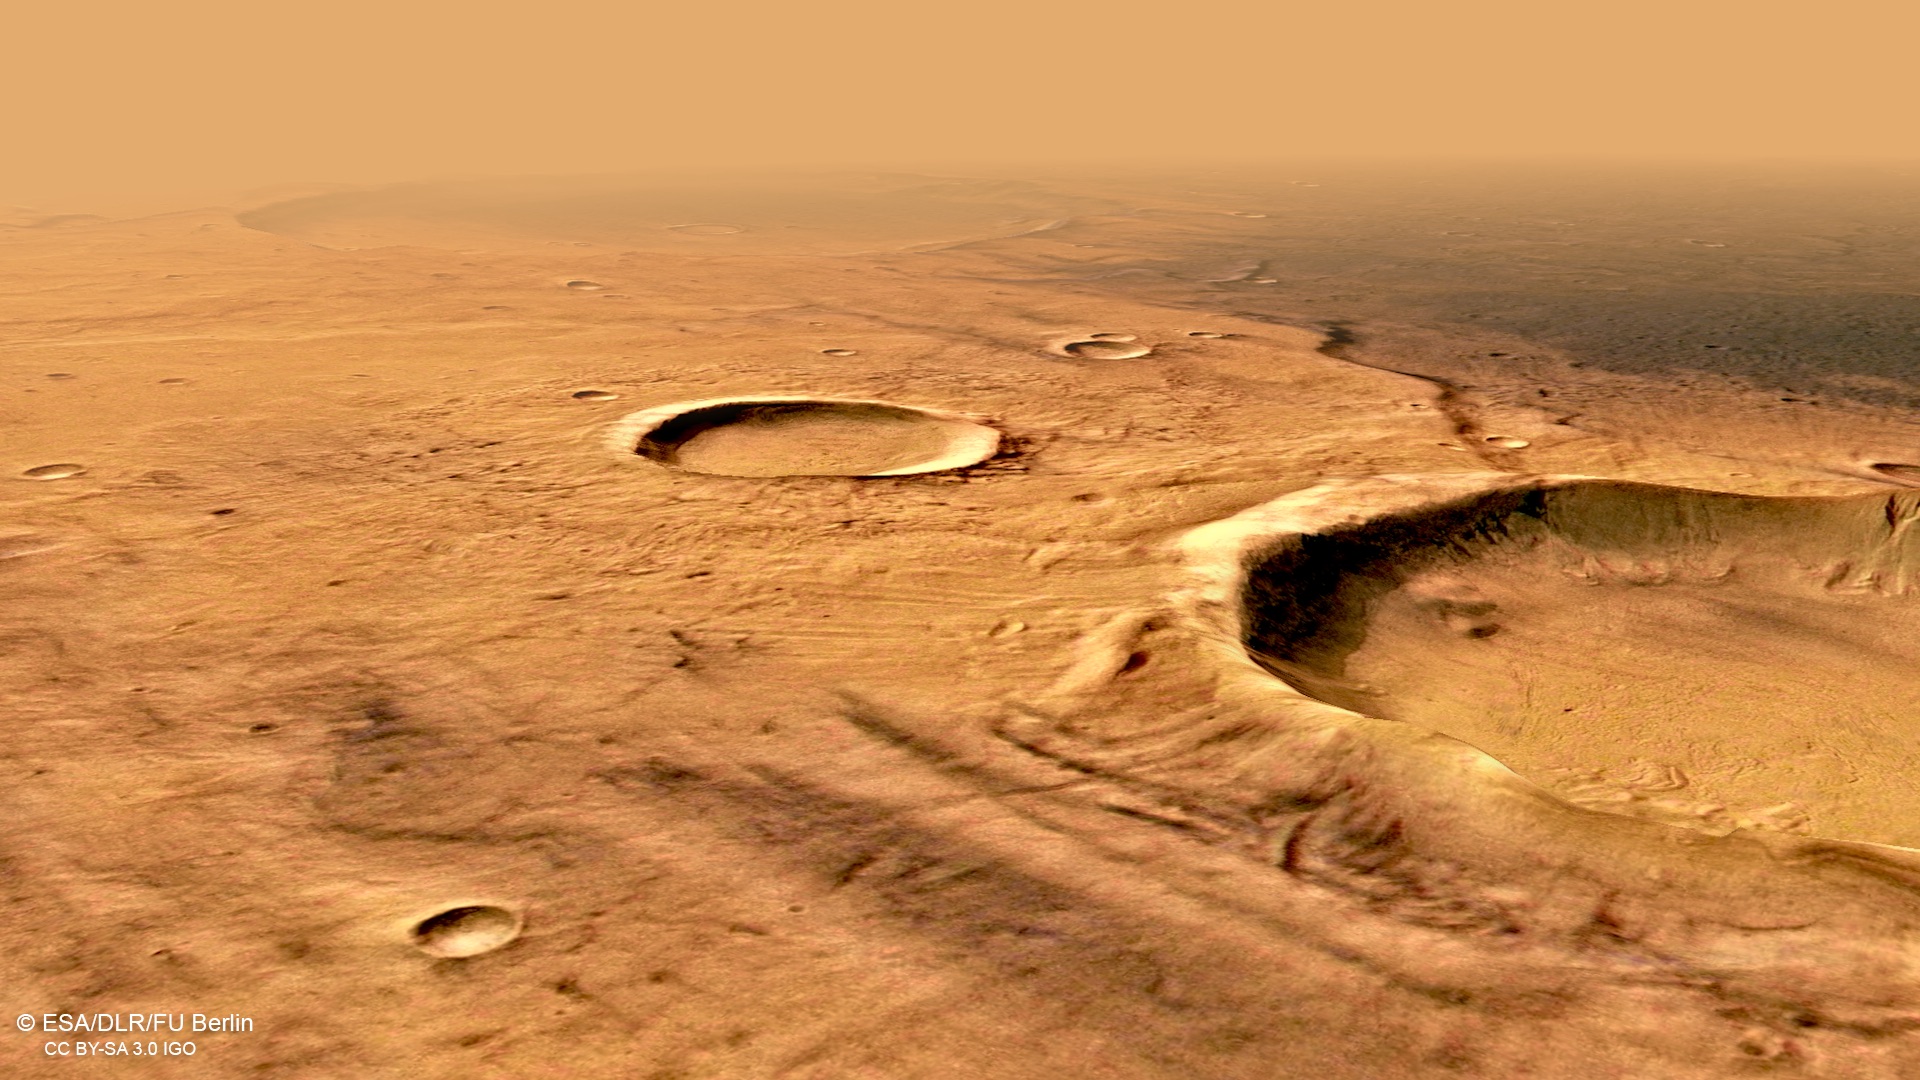 Planeet Mars. Nieuwe ONGELOOFLIJKE foto's hebben de hele mensheid terra cimmeria-foto verbaasd